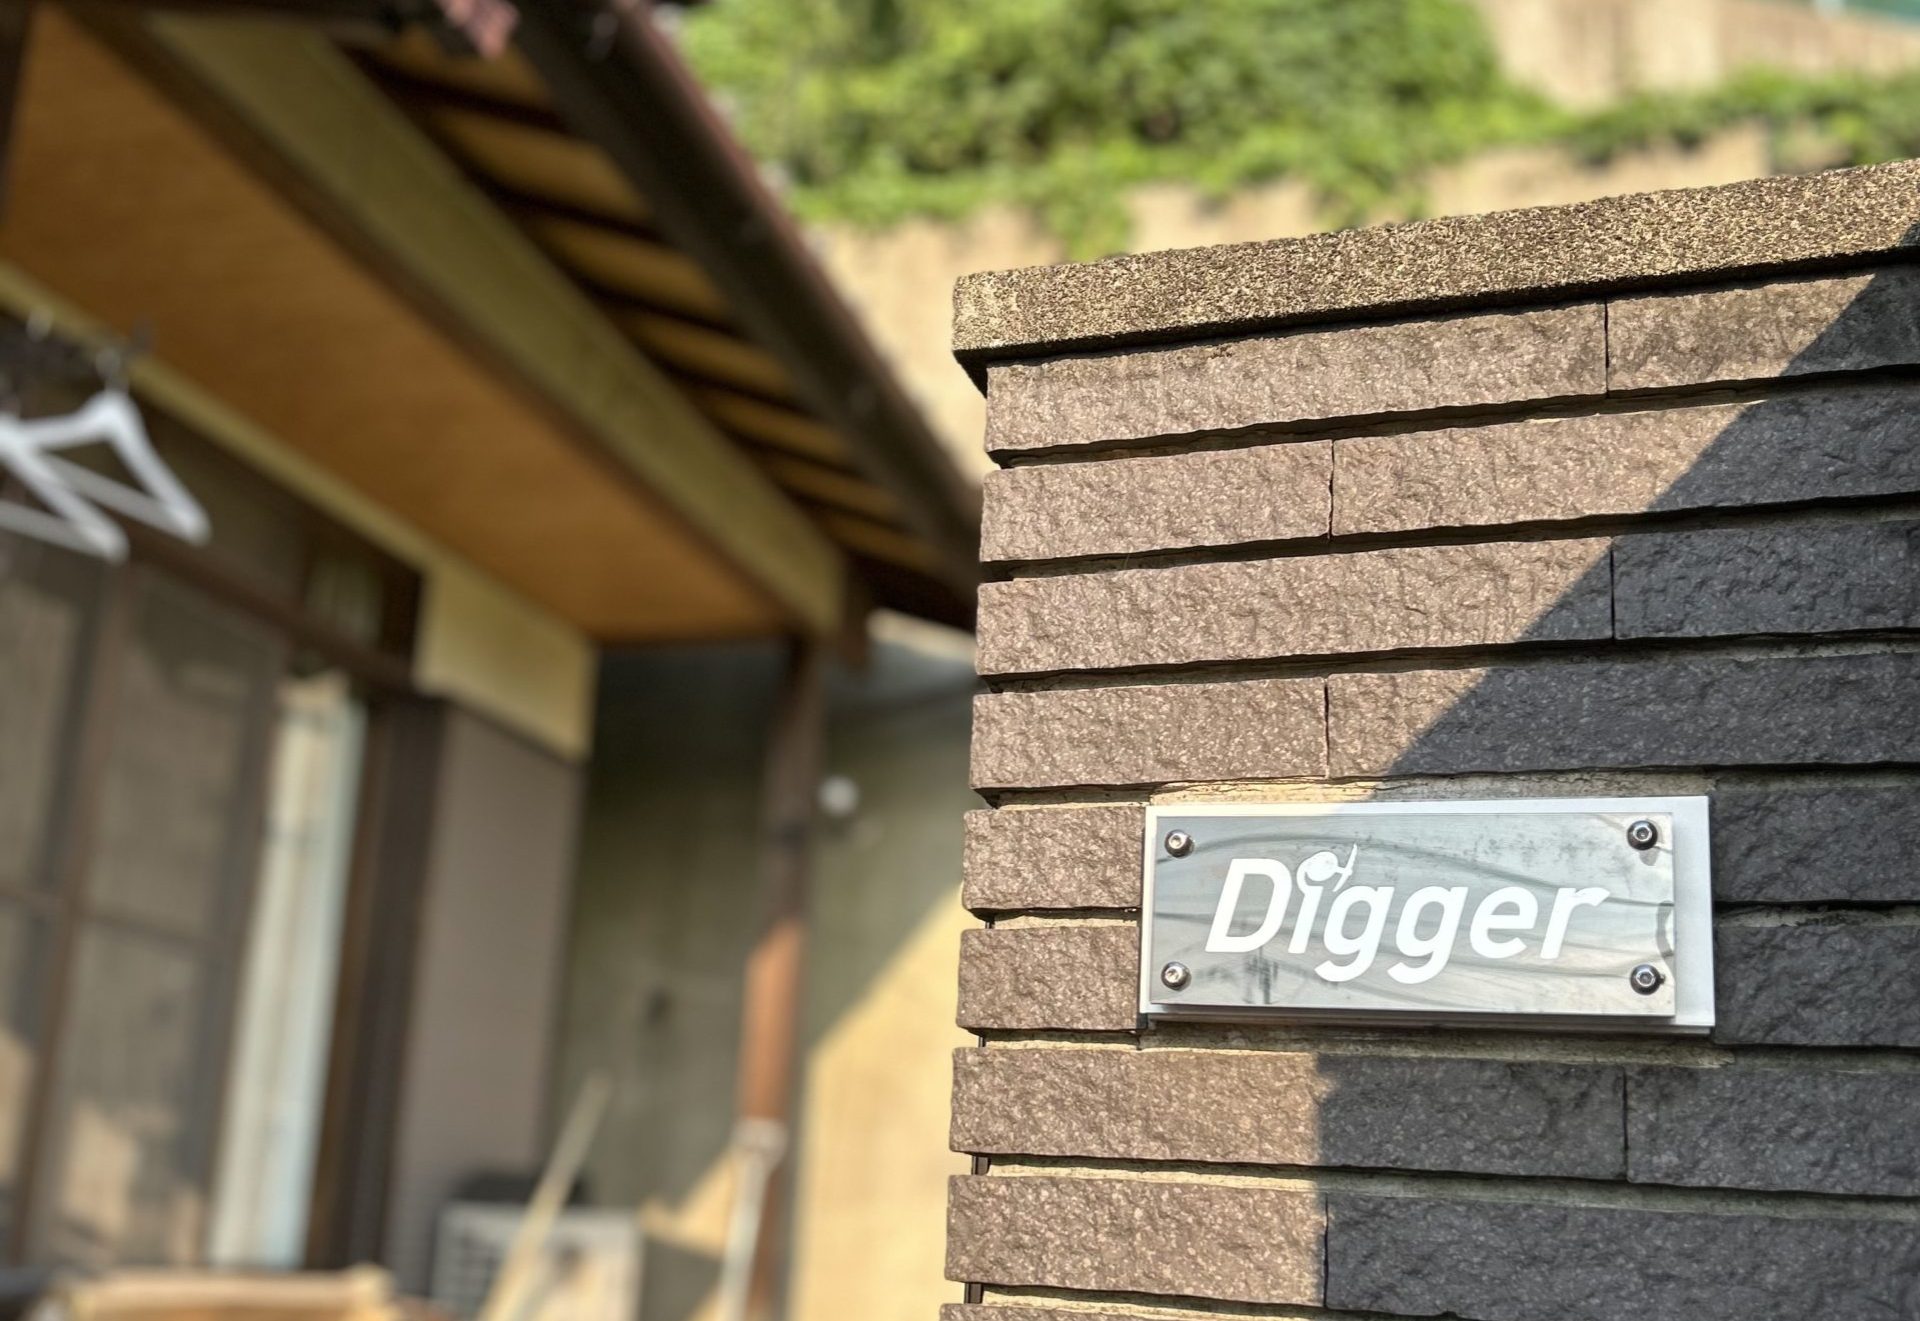 株式会社Digger